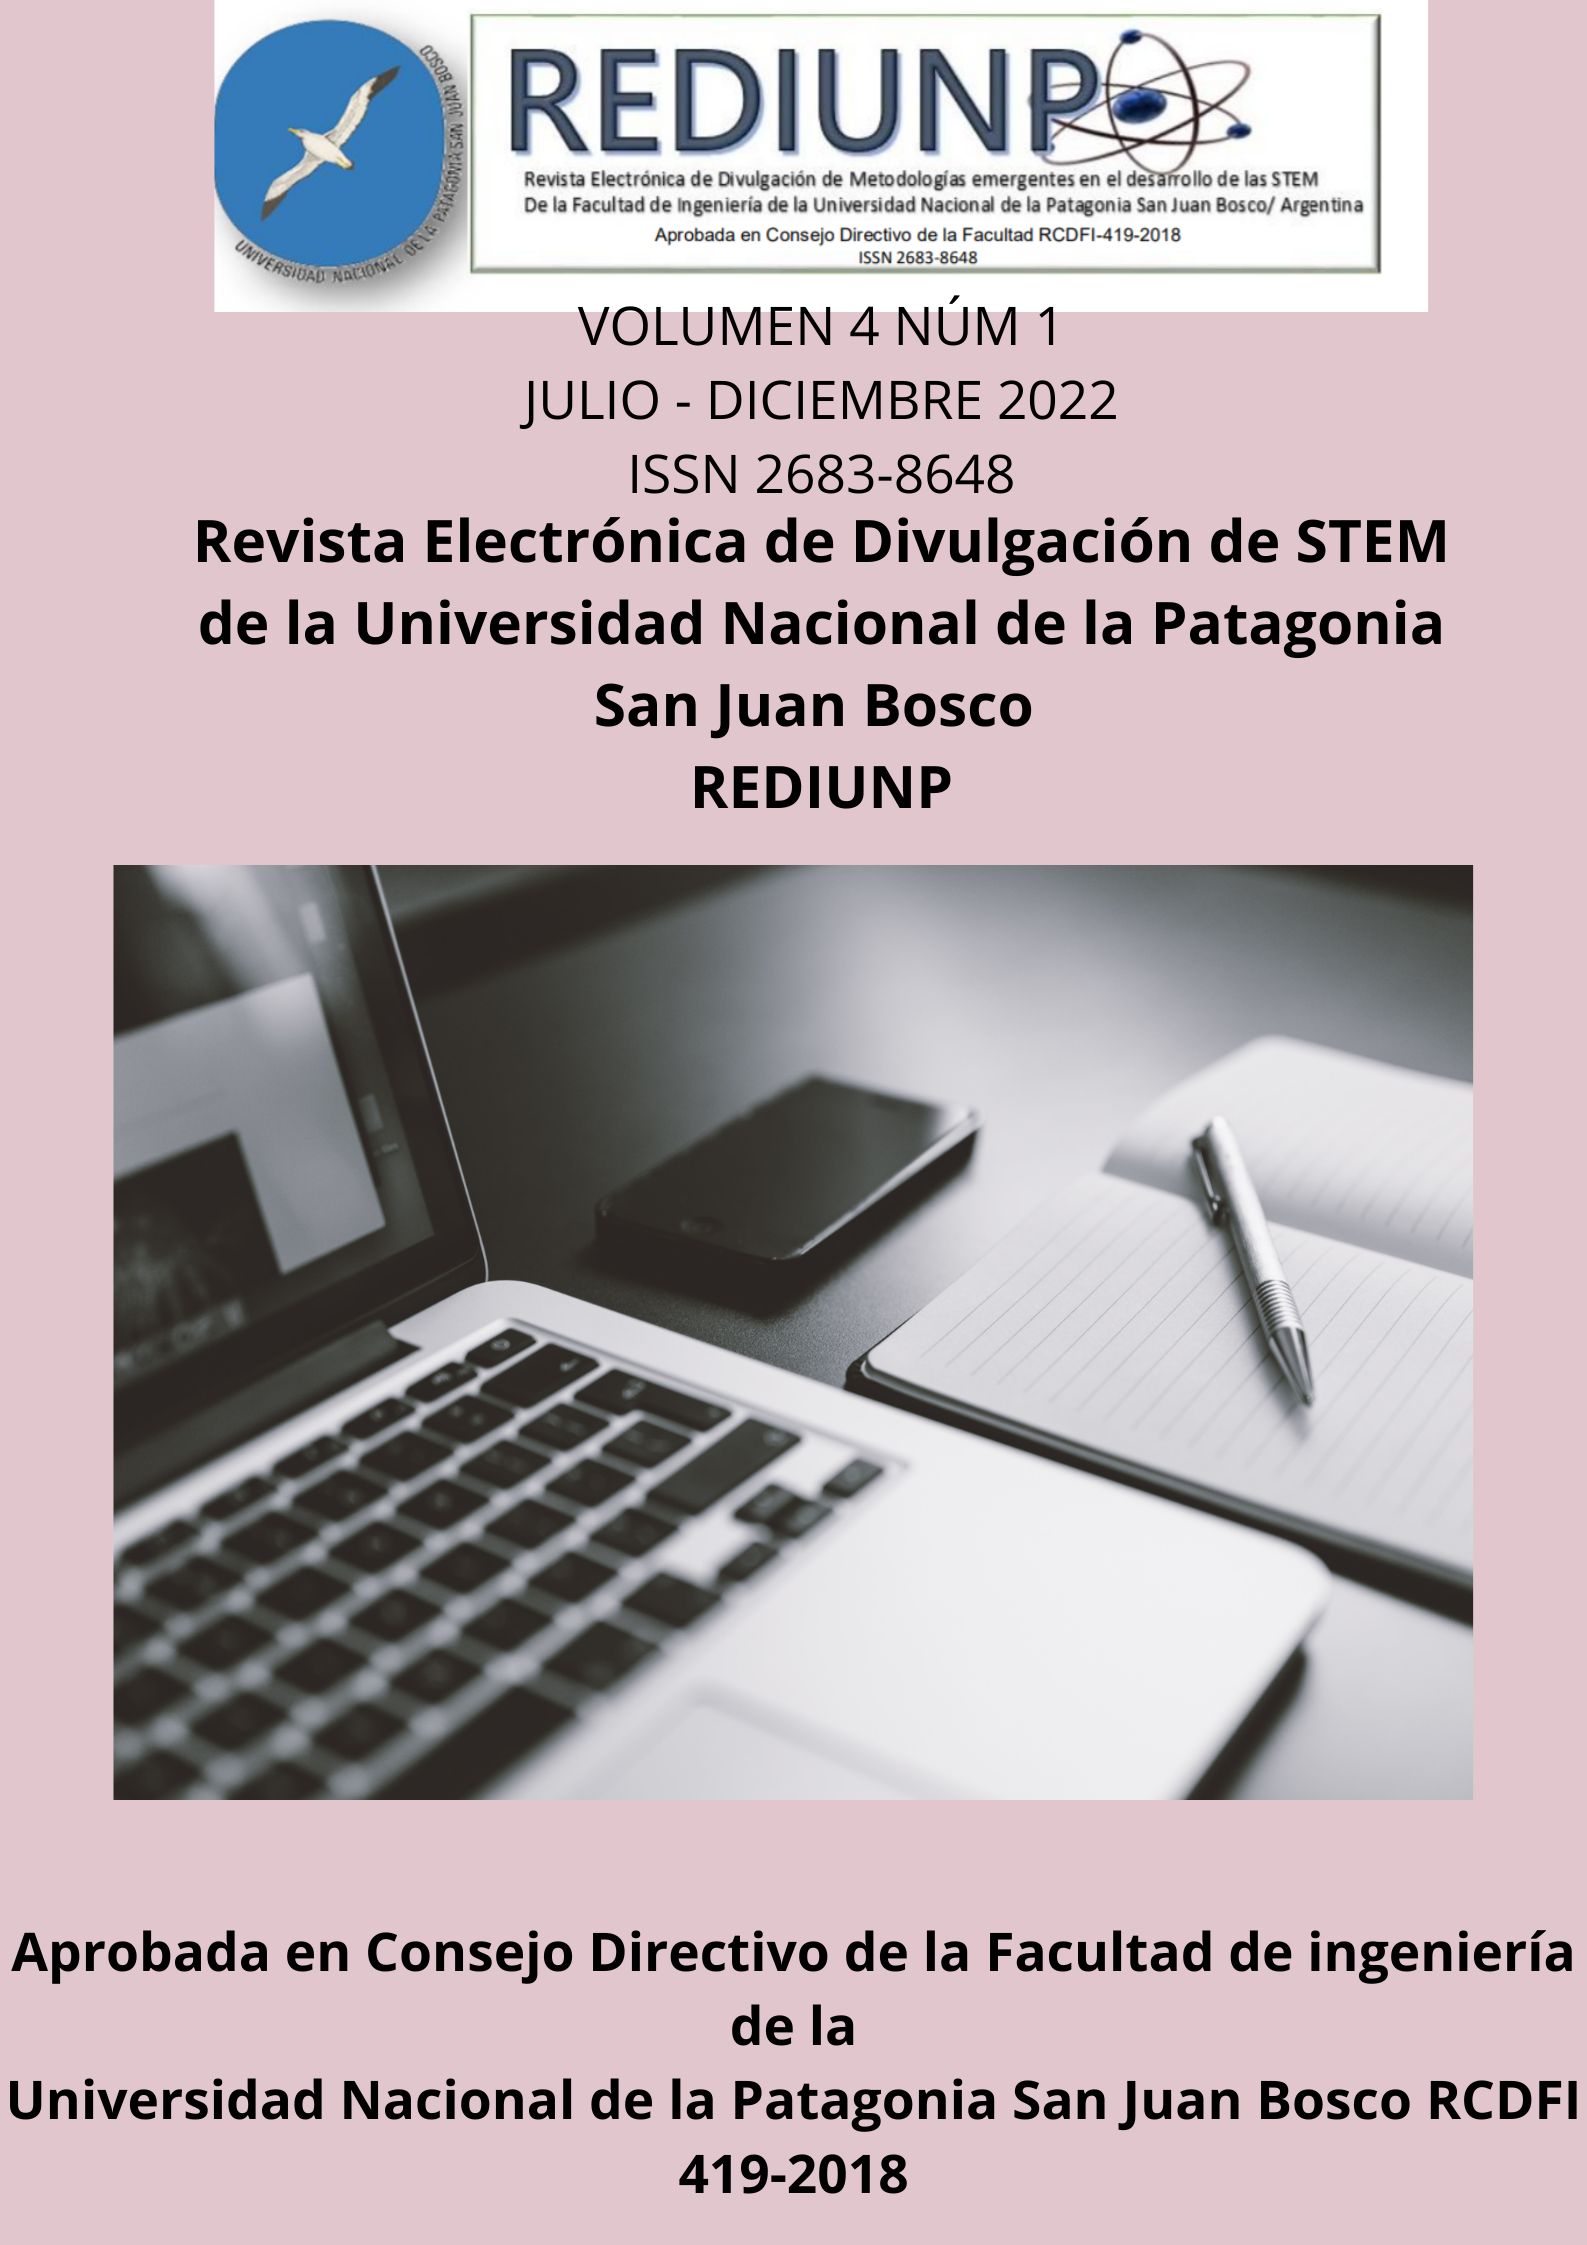 					Ver Vol. 4 Núm. 1 (2022): Revista Electrónica de divulgación de STEM de la Facultad de Ingeniería de la Universidad Nacional de la Patagonia San Juan Bosco.
				